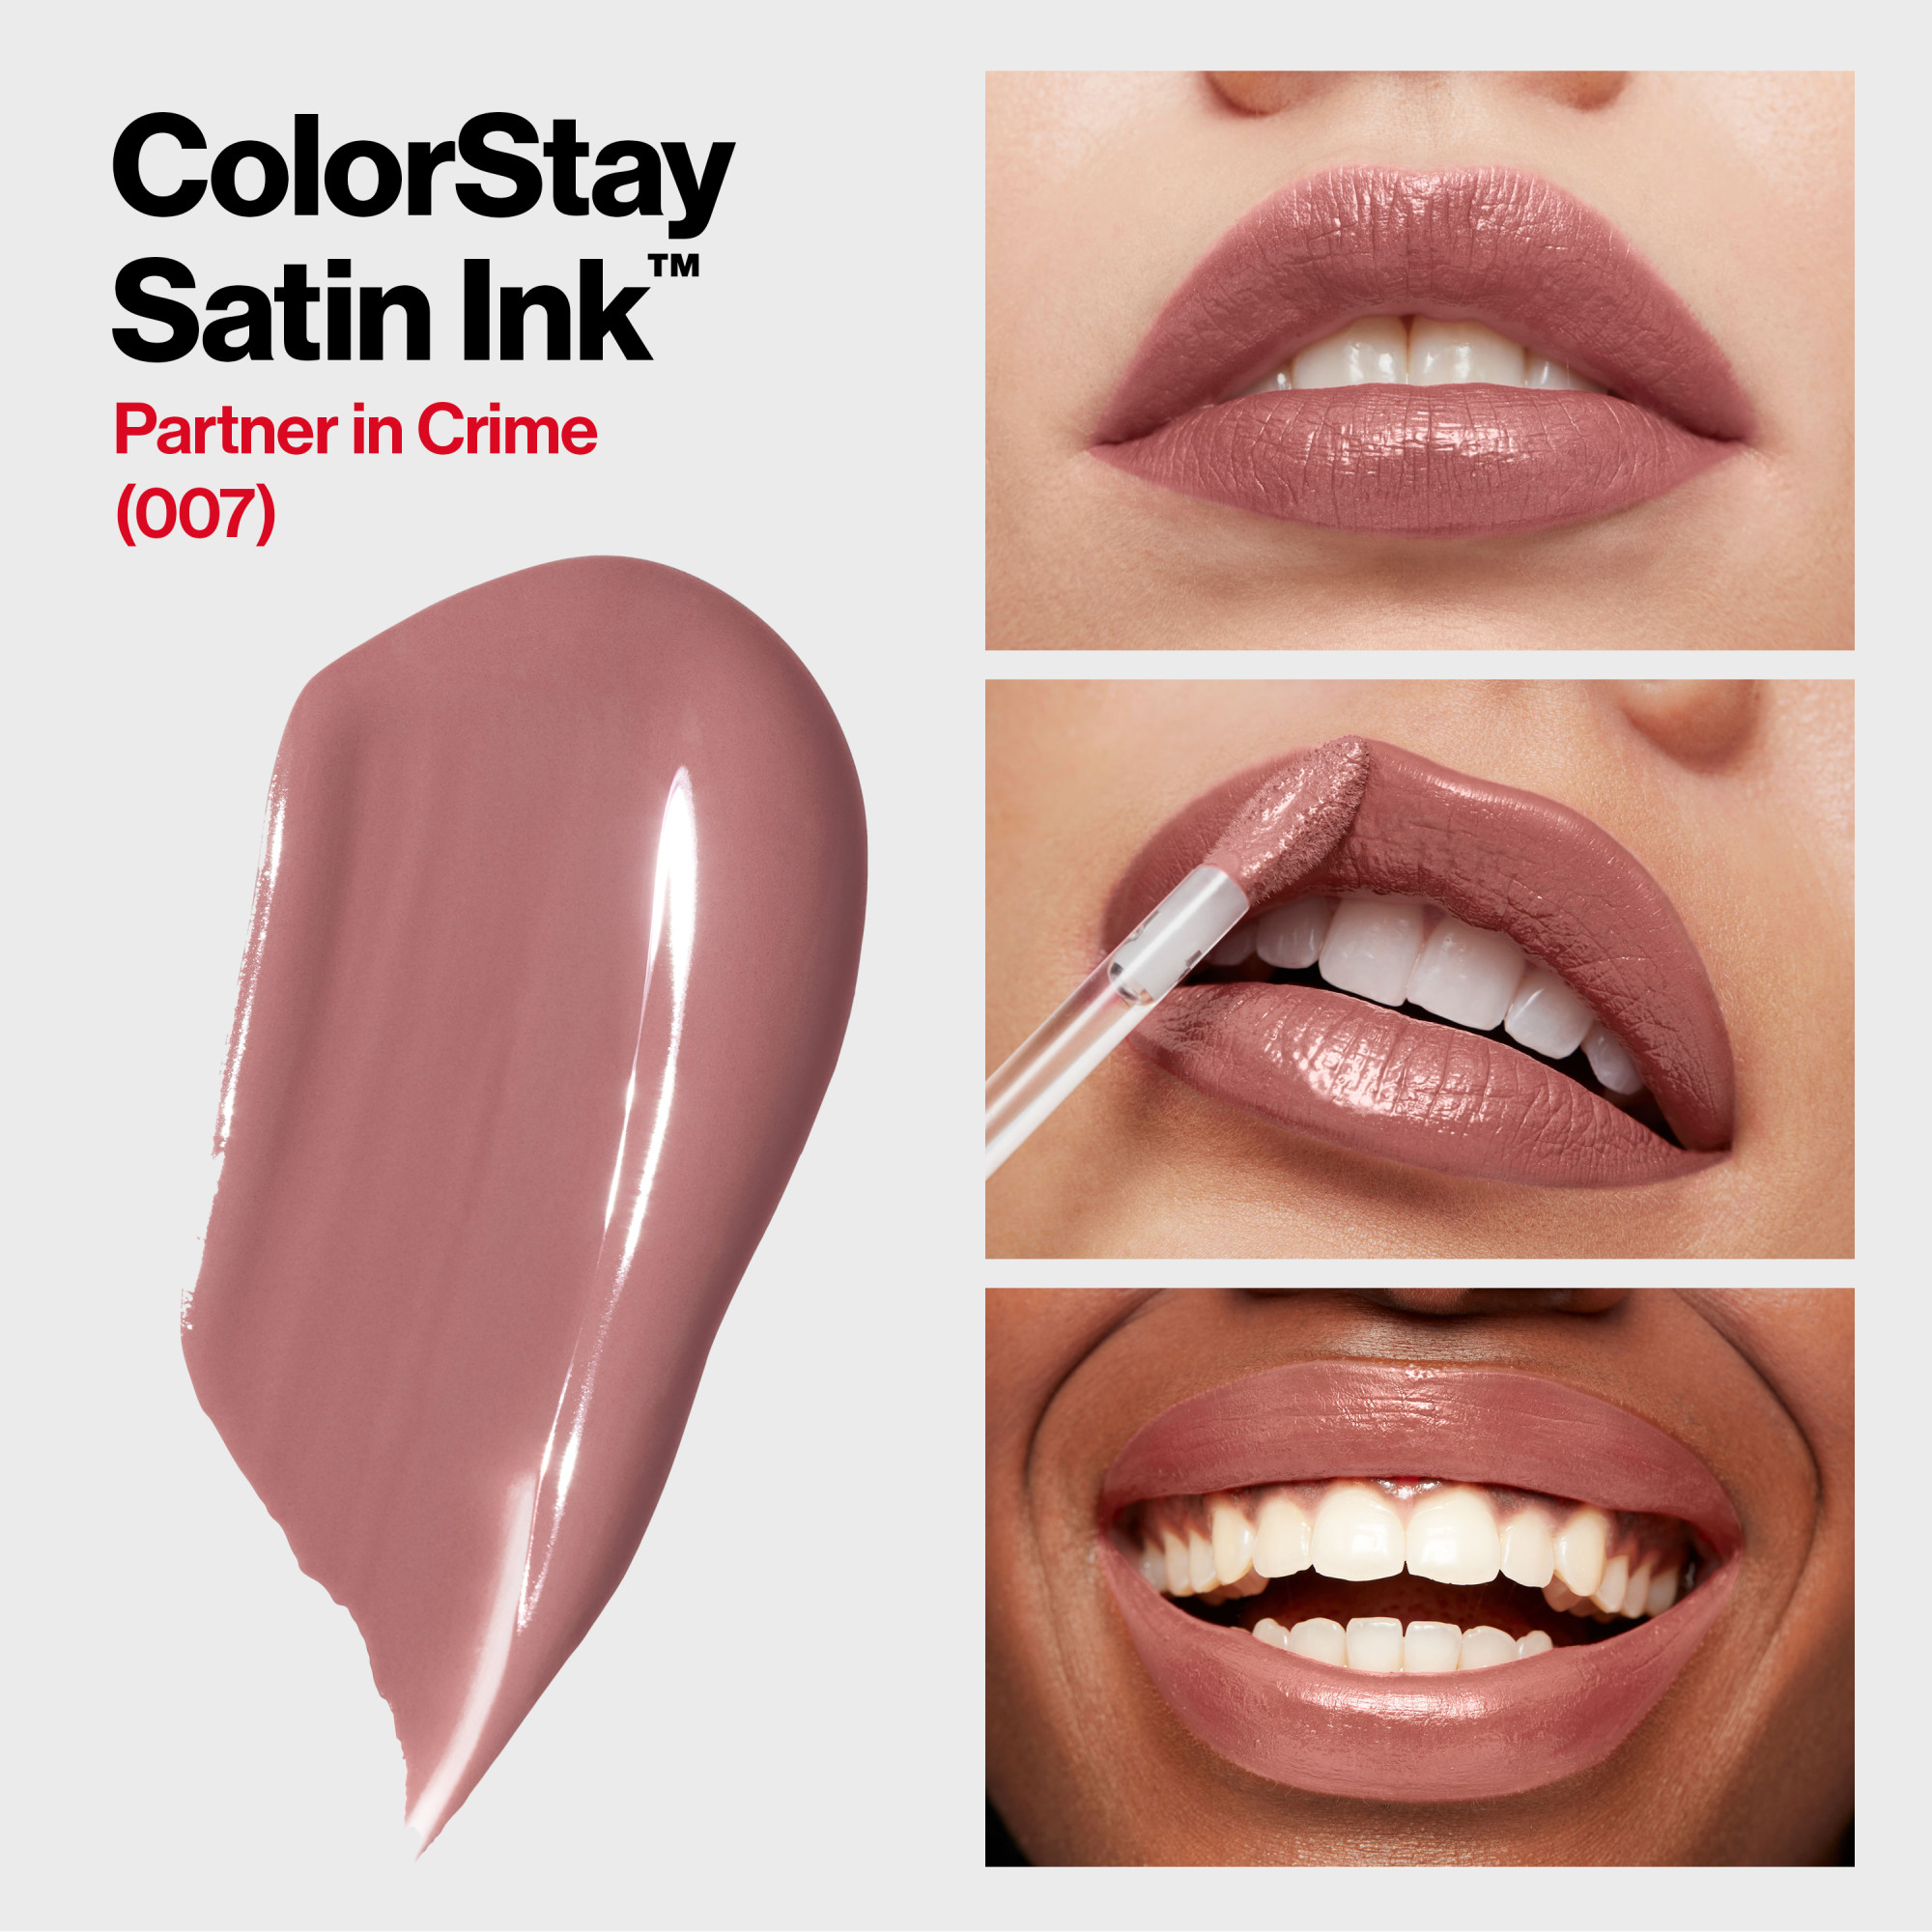 Revlon ColorStay Satin Ink Long Lasting Lipstick with Vitamin E, 007 Partner in Crime, 0.17 fl. Oz - image 3 of 11